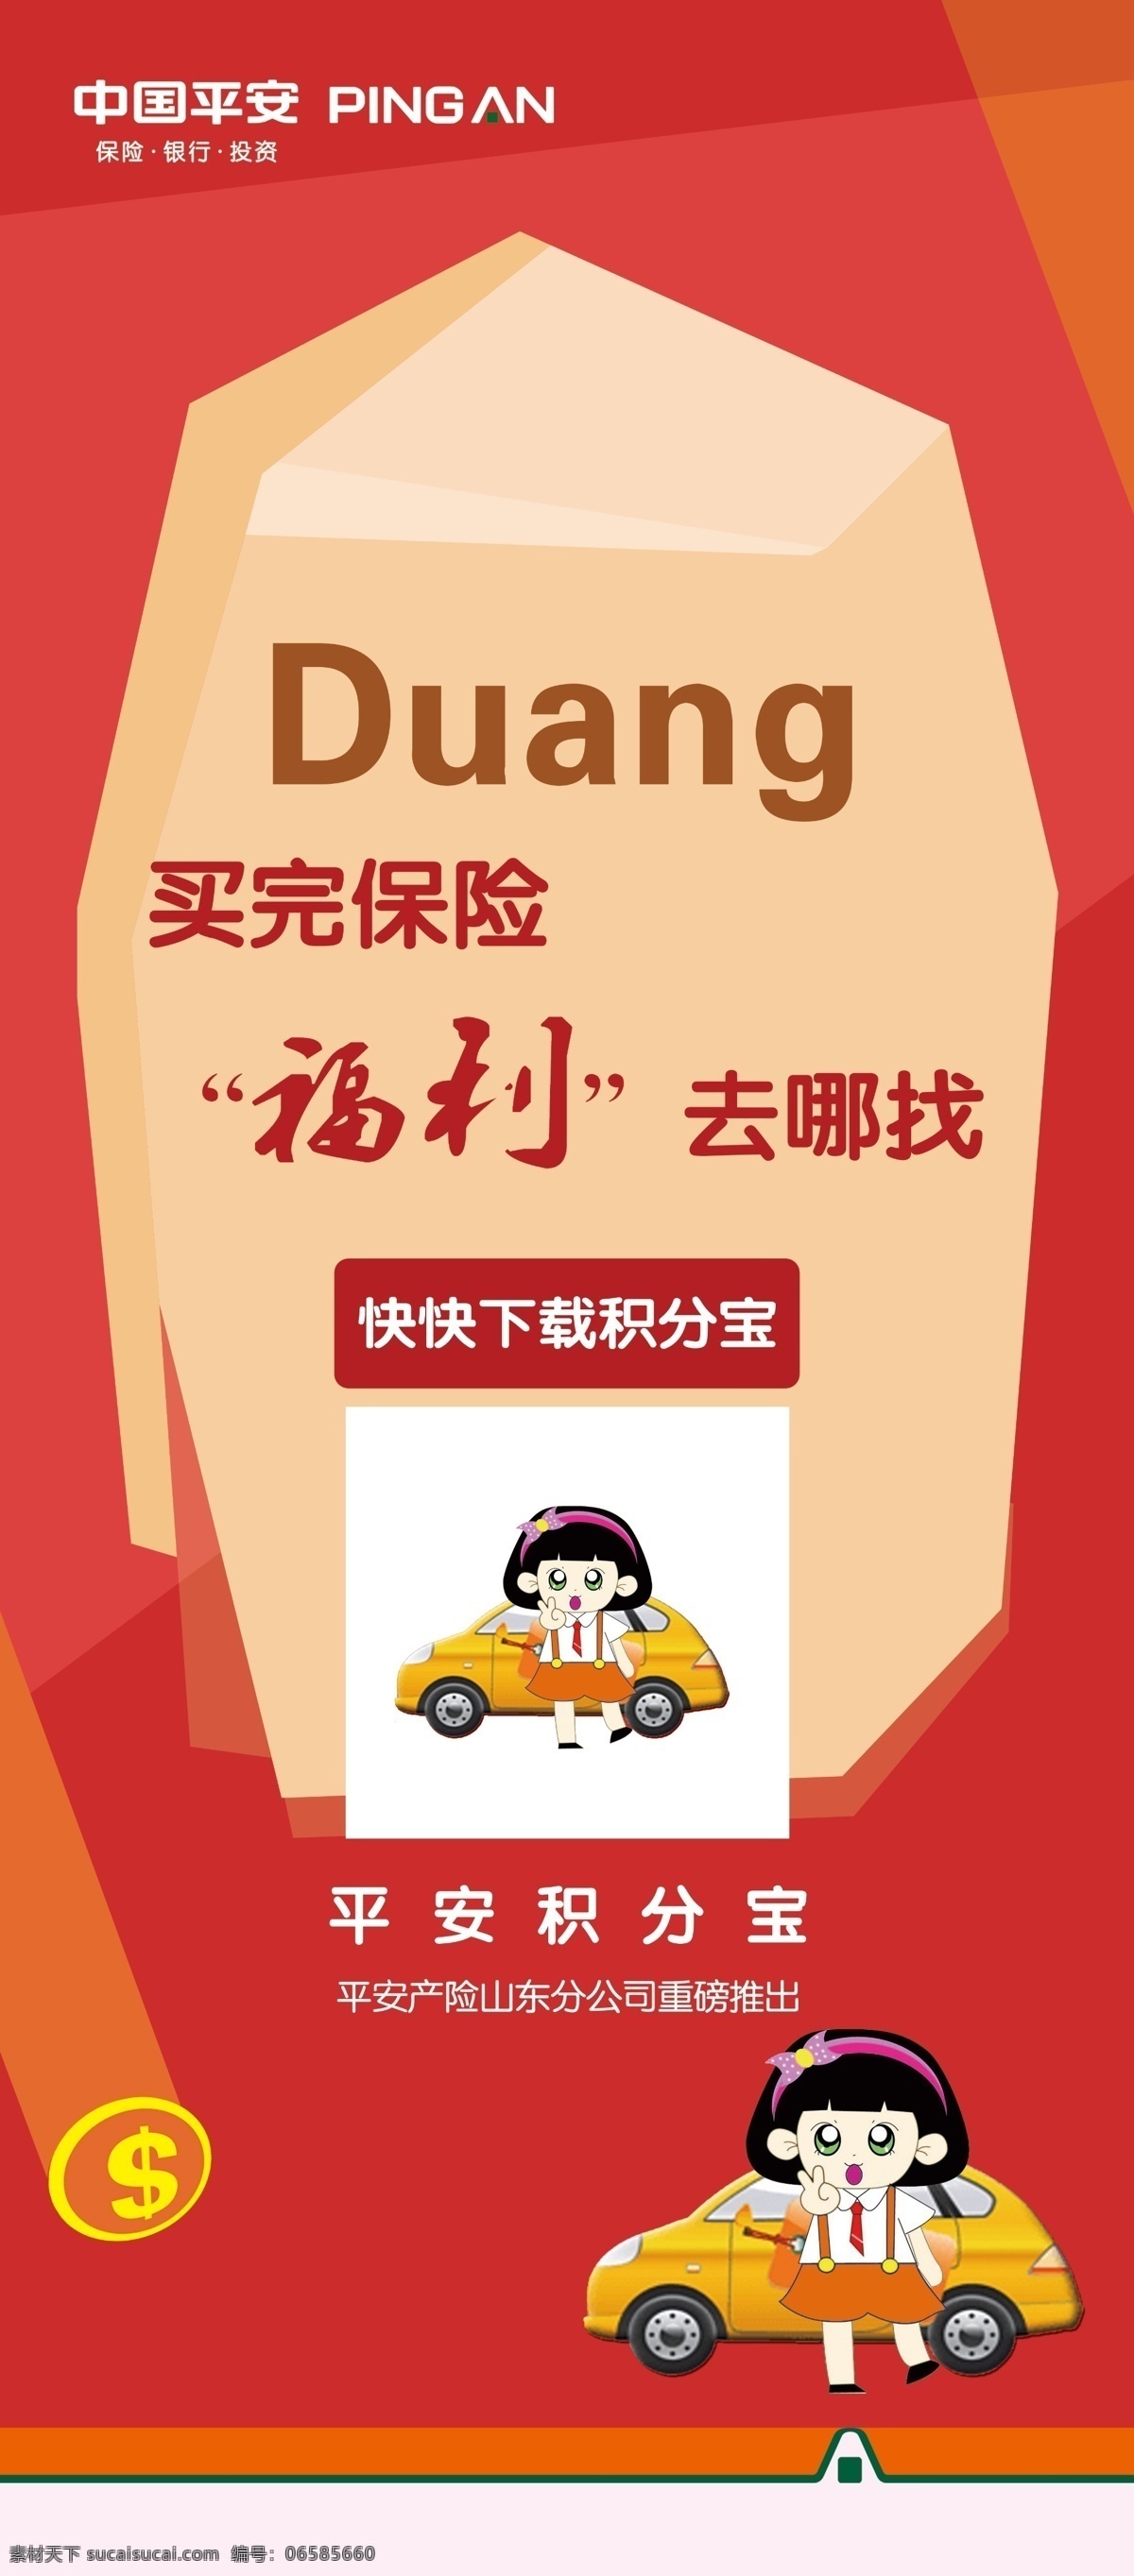 中国平安 平安保险 卡通人物汽车 红色背景 duang 福利 金钱